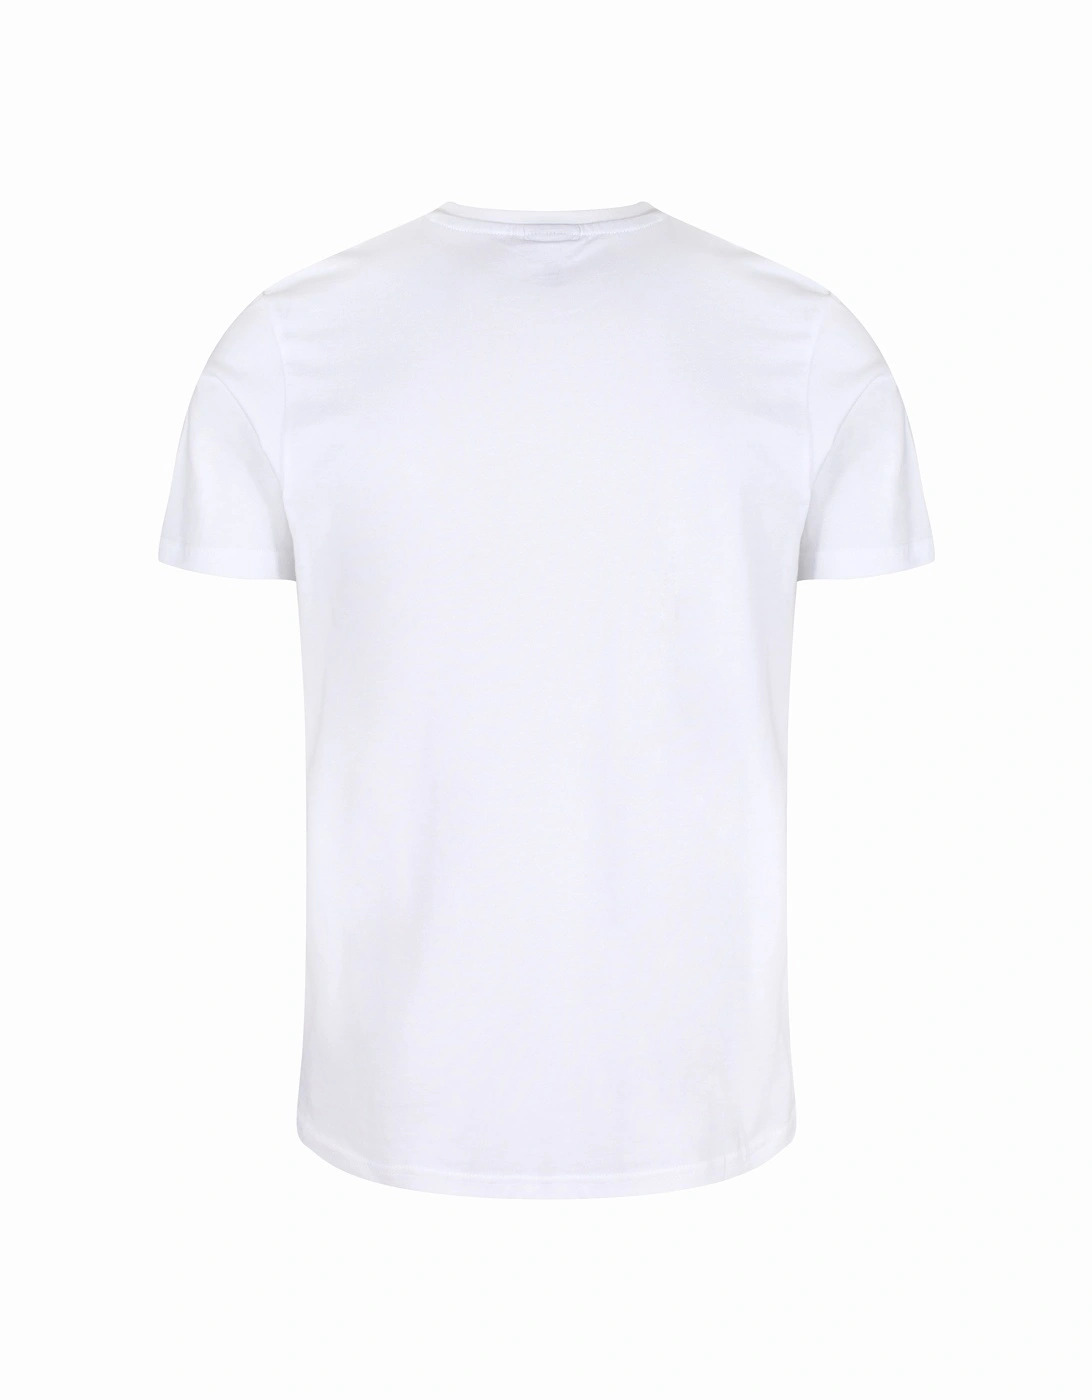 Glisenta Graphic Print T-Shirt | White